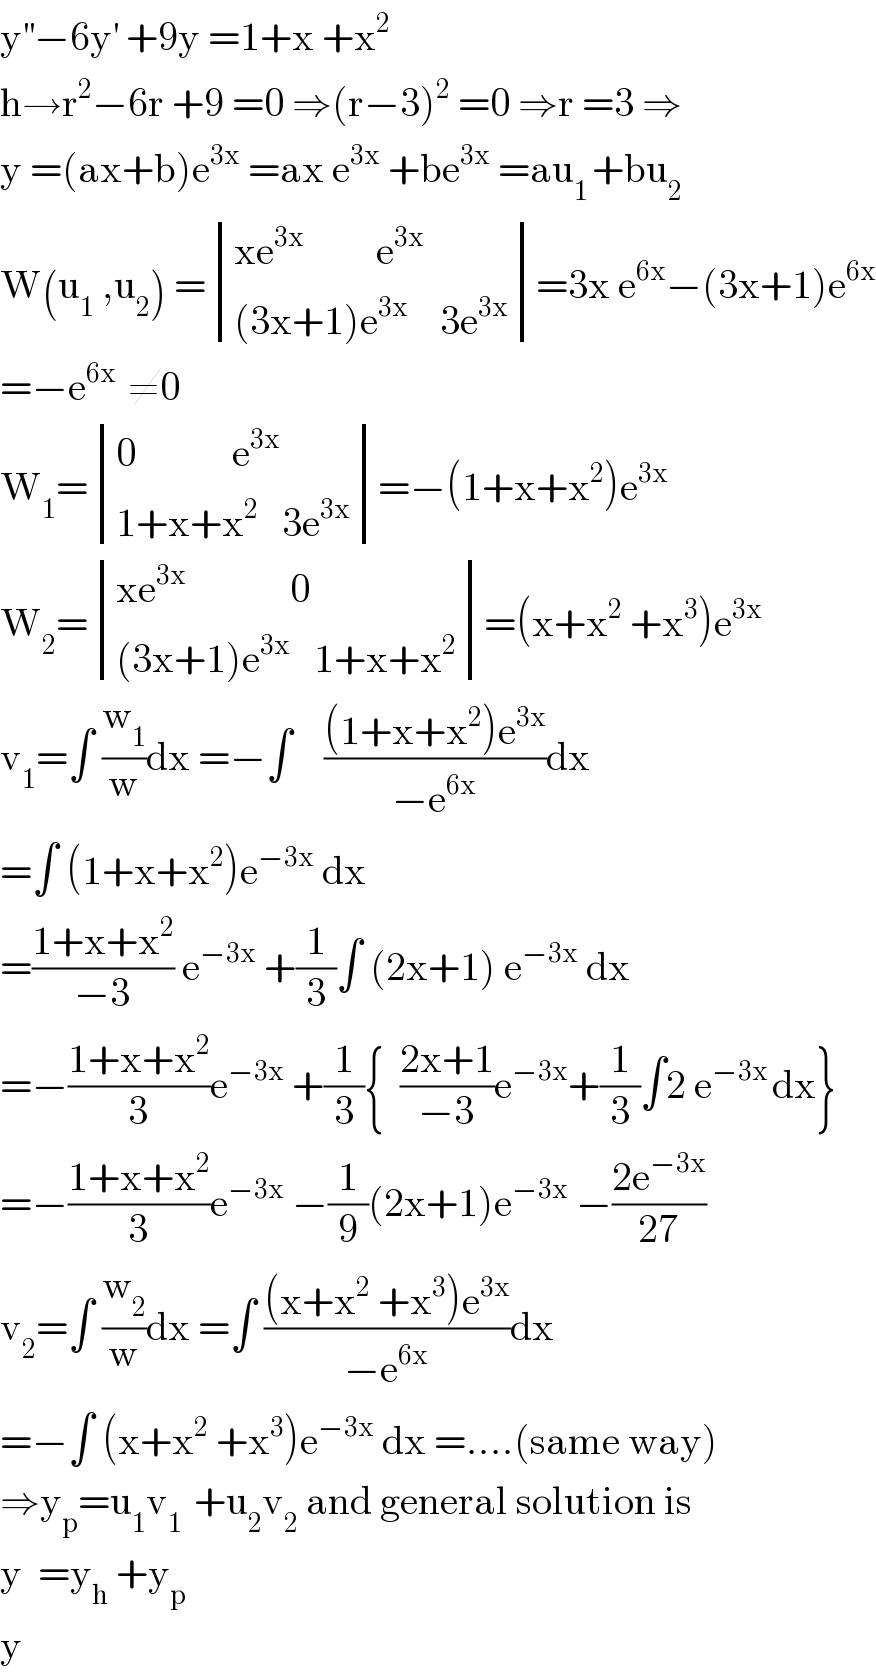 y^(′′) −6y^′  +9y =1+x +x^2   h→r^2 −6r +9 =0 ⇒(r−3)^2  =0 ⇒r =3 ⇒  y =(ax+b)e^(3x)  =ax e^(3x)  +be^(3x)  =au_(1 ) +bu_2   W(u_1  ,u_2 ) = determinant (((xe^(3x)          e^(3x) )),(((3x+1)e^(3x)     3e^(3x) )))=3x e^(6x) −(3x+1)e^(6x)   =−e^(6x )  ≠0  W_1 = determinant (((0            e^(3x) )),((1+x+x^2    3e^(3x) )))=−(1+x+x^2 )e^(3x)   W_2 = determinant (((xe^(3x)              0)),(((3x+1)e^(3x)    1+x+x^2 )))=(x+x^2  +x^3 )e^(3x)   v_1 =∫ (w_1 /w)dx =−∫    (((1+x+x^2 )e^(3x) )/(−e^(6x) ))dx  =∫ (1+x+x^2 )e^(−3x)  dx  =((1+x+x^2 )/(−3)) e^(−3x)  +(1/3)∫ (2x+1) e^(−3x)  dx  =−((1+x+x^2 )/3)e^(−3x)  +(1/3){  ((2x+1)/(−3))e^(−3x) +(1/3)∫2 e^(−3x ) dx}  =−((1+x+x^2 )/3)e^(−3x)  −(1/9)(2x+1)e^(−3x)  −((2e^(−3x) )/(27))  v_2 =∫ (w_2 /w)dx =∫ (((x+x^2  +x^3 )e^(3x) )/(−e^(6x) ))dx  =−∫ (x+x^2  +x^3 )e^(−3x)  dx =....(same way)  ⇒y_p =u_1 v_(1 )  +u_2 v_2  and general solution is  y  =y_h  +y_p   y  